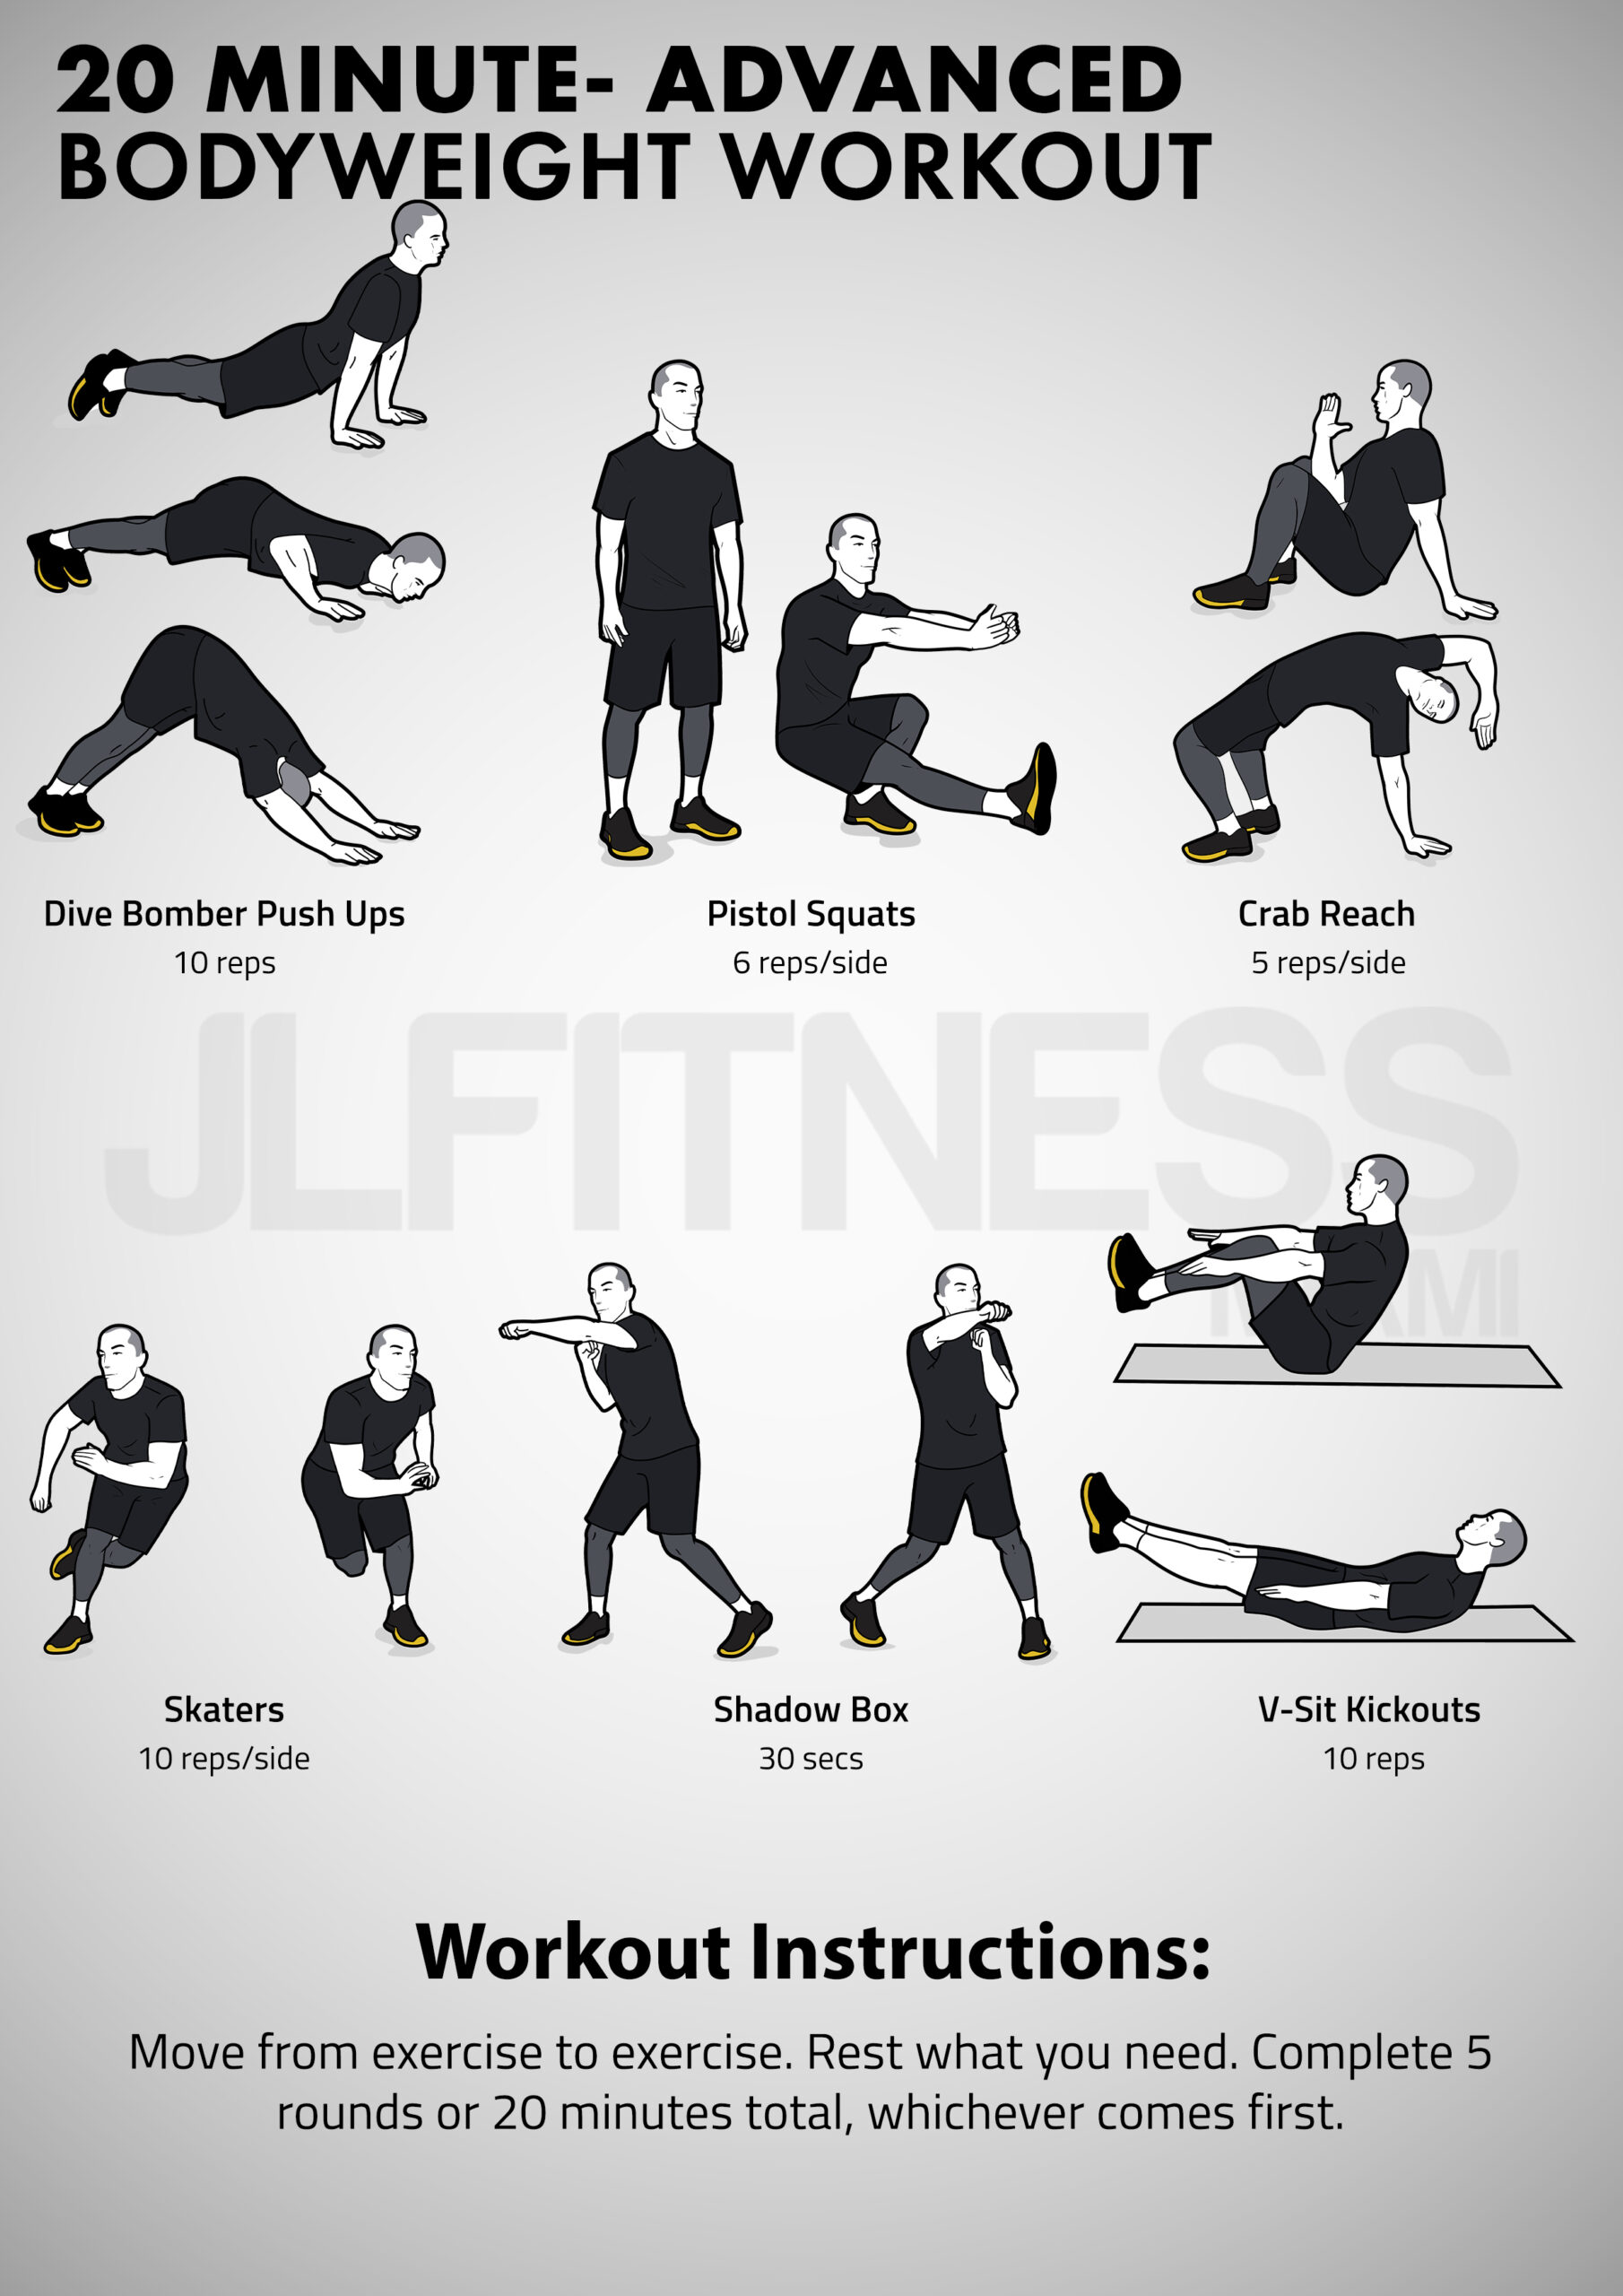 20 Minute Advanced Bodyweight Workout - JLFITNESSMIAMI- Easy to Follow ...